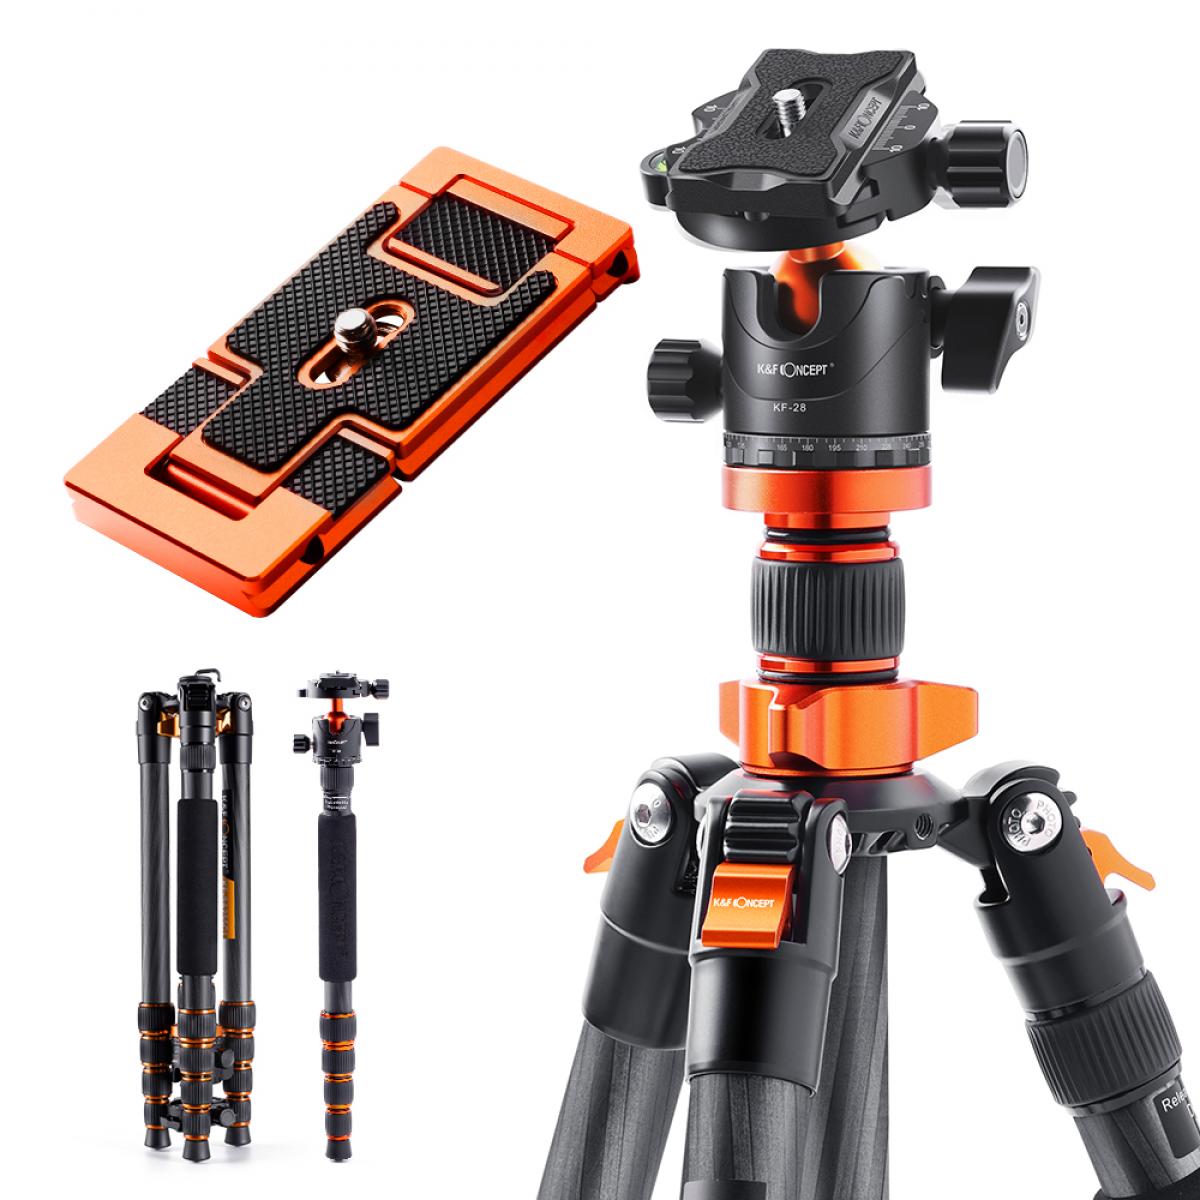 Soporte giratorio, soporte para cámara con montura de zapata para cámara,  soporte para cámara construido para profesionales